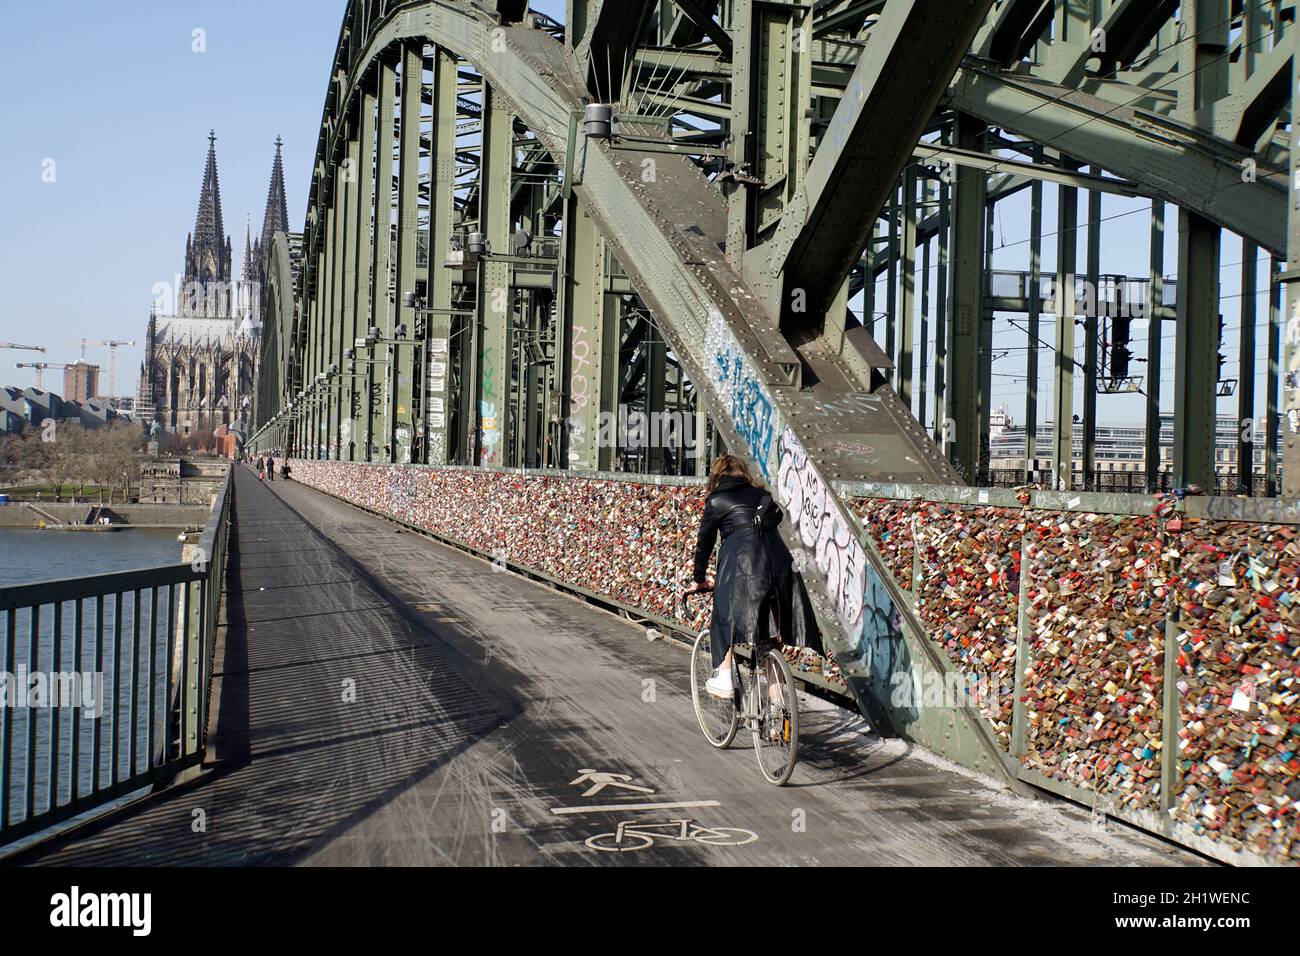 Touristenattraktion Liebsesschlösser auf der Hohenzollernbrücke, fast menschenleer während der Covid 19-Pandemie, Deutschland, Nordrhein-Westfalen, Lö Foto de stock